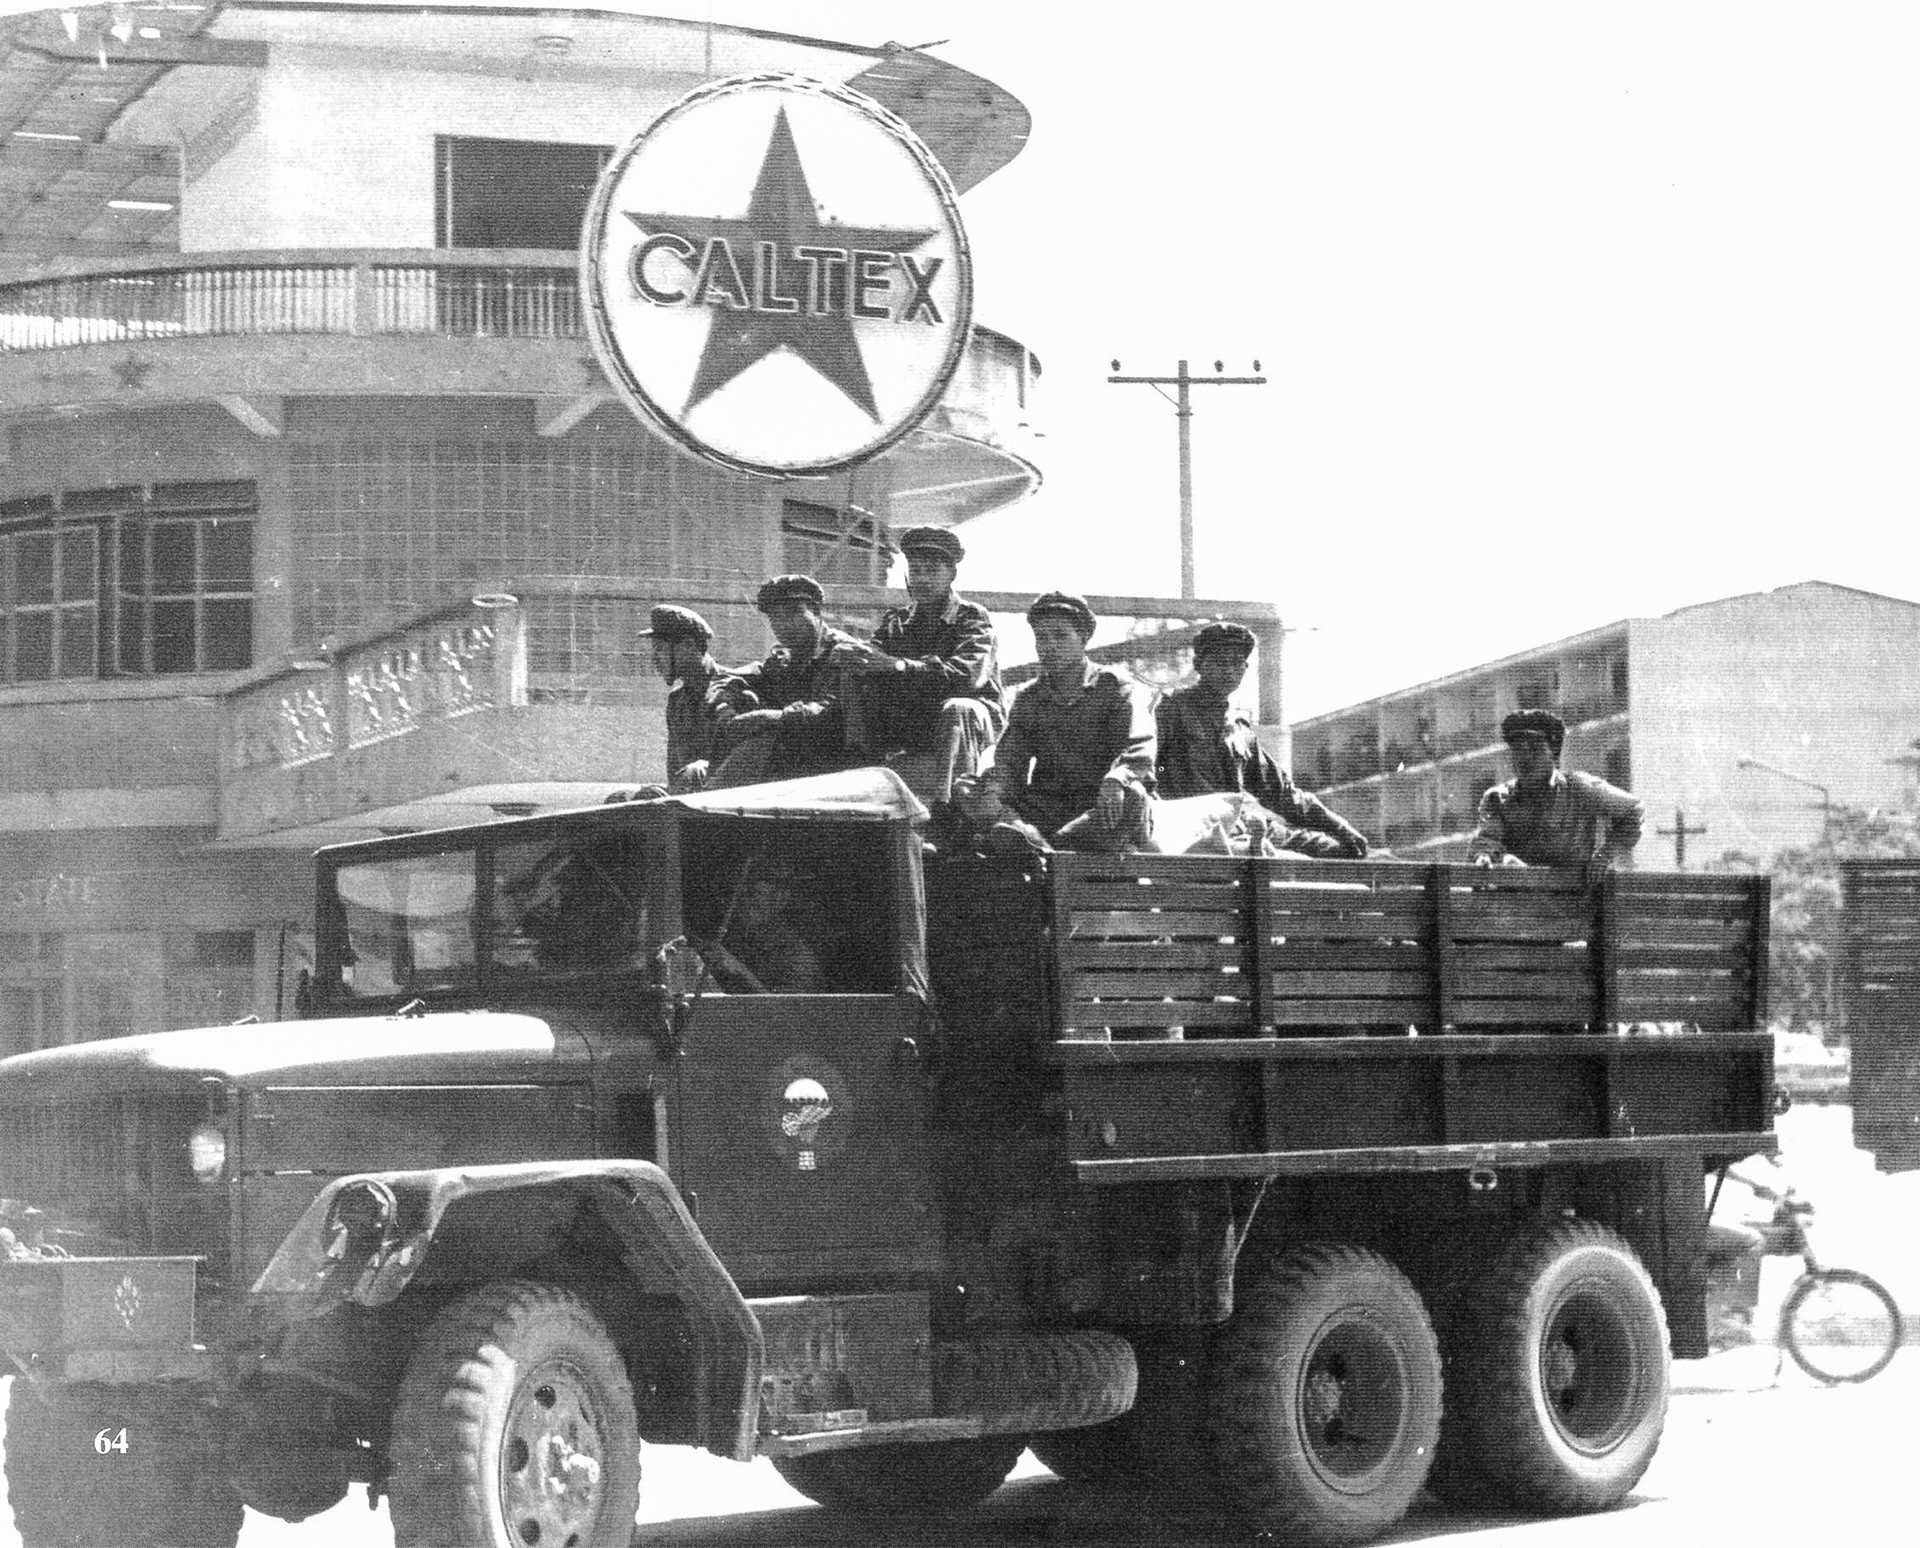 Vojnici pokreta Pathet Lao u Vientianeu, Laos.

